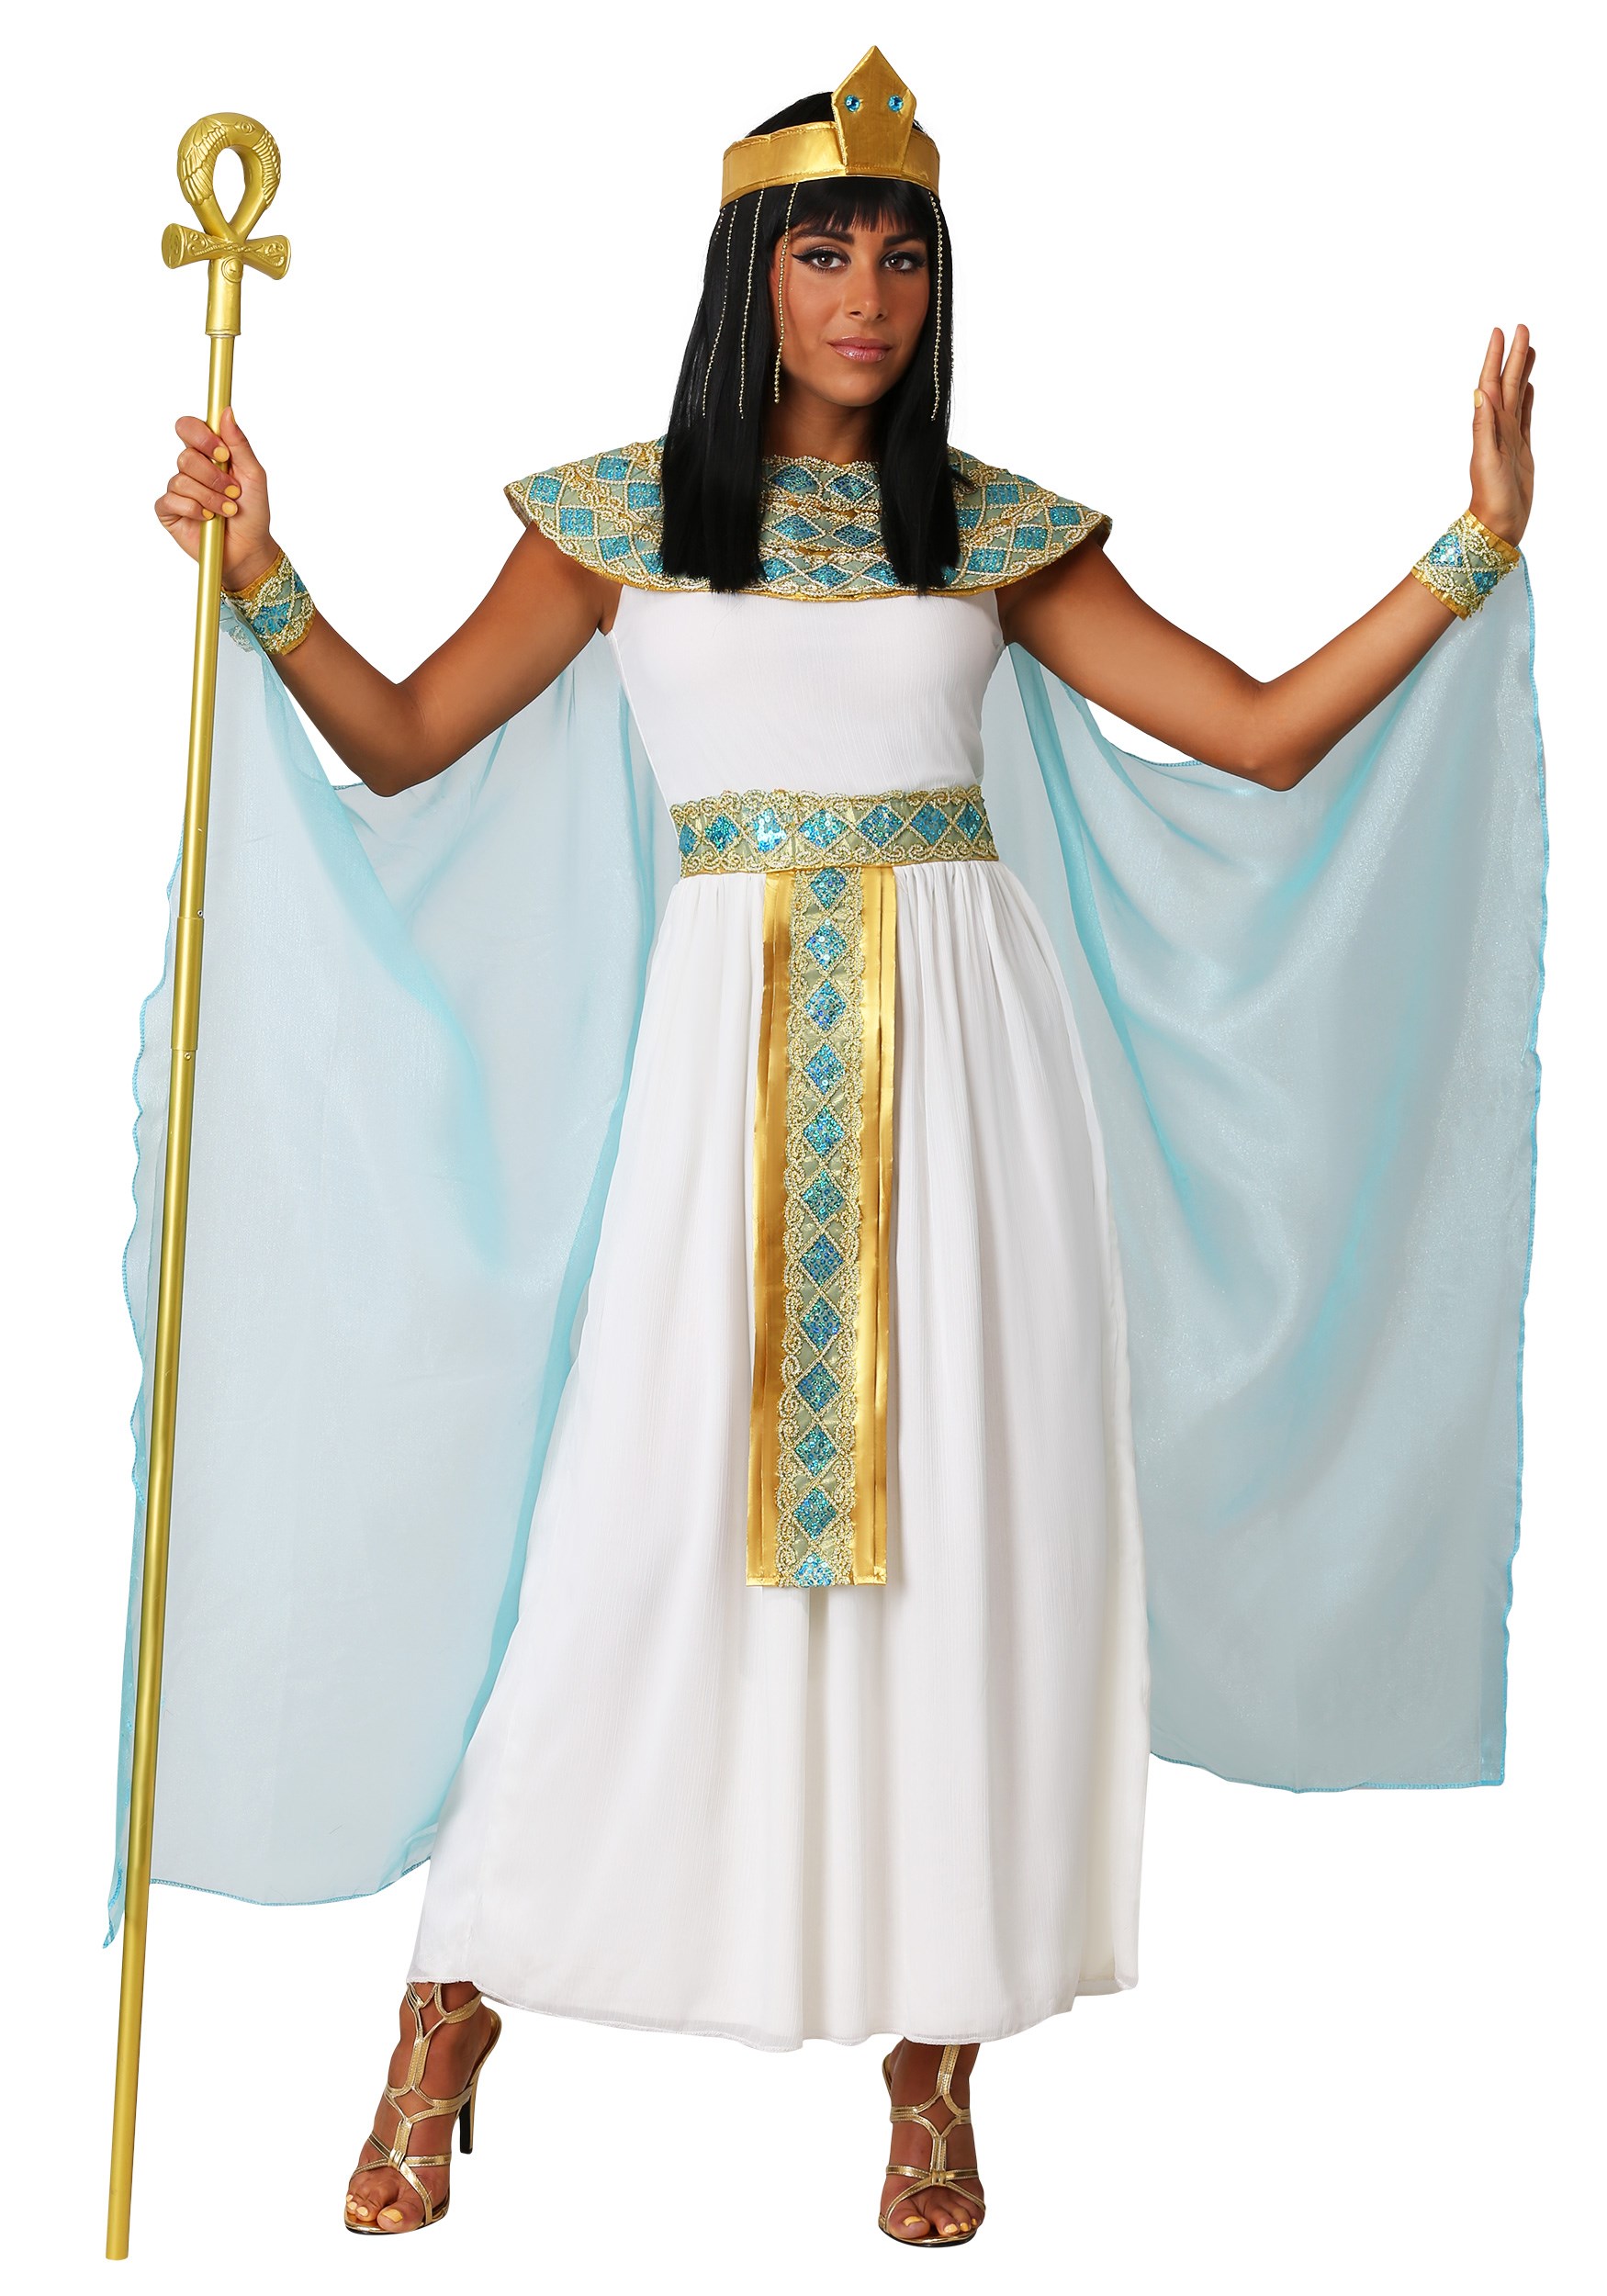 Queen Cleopatra Costume For Women